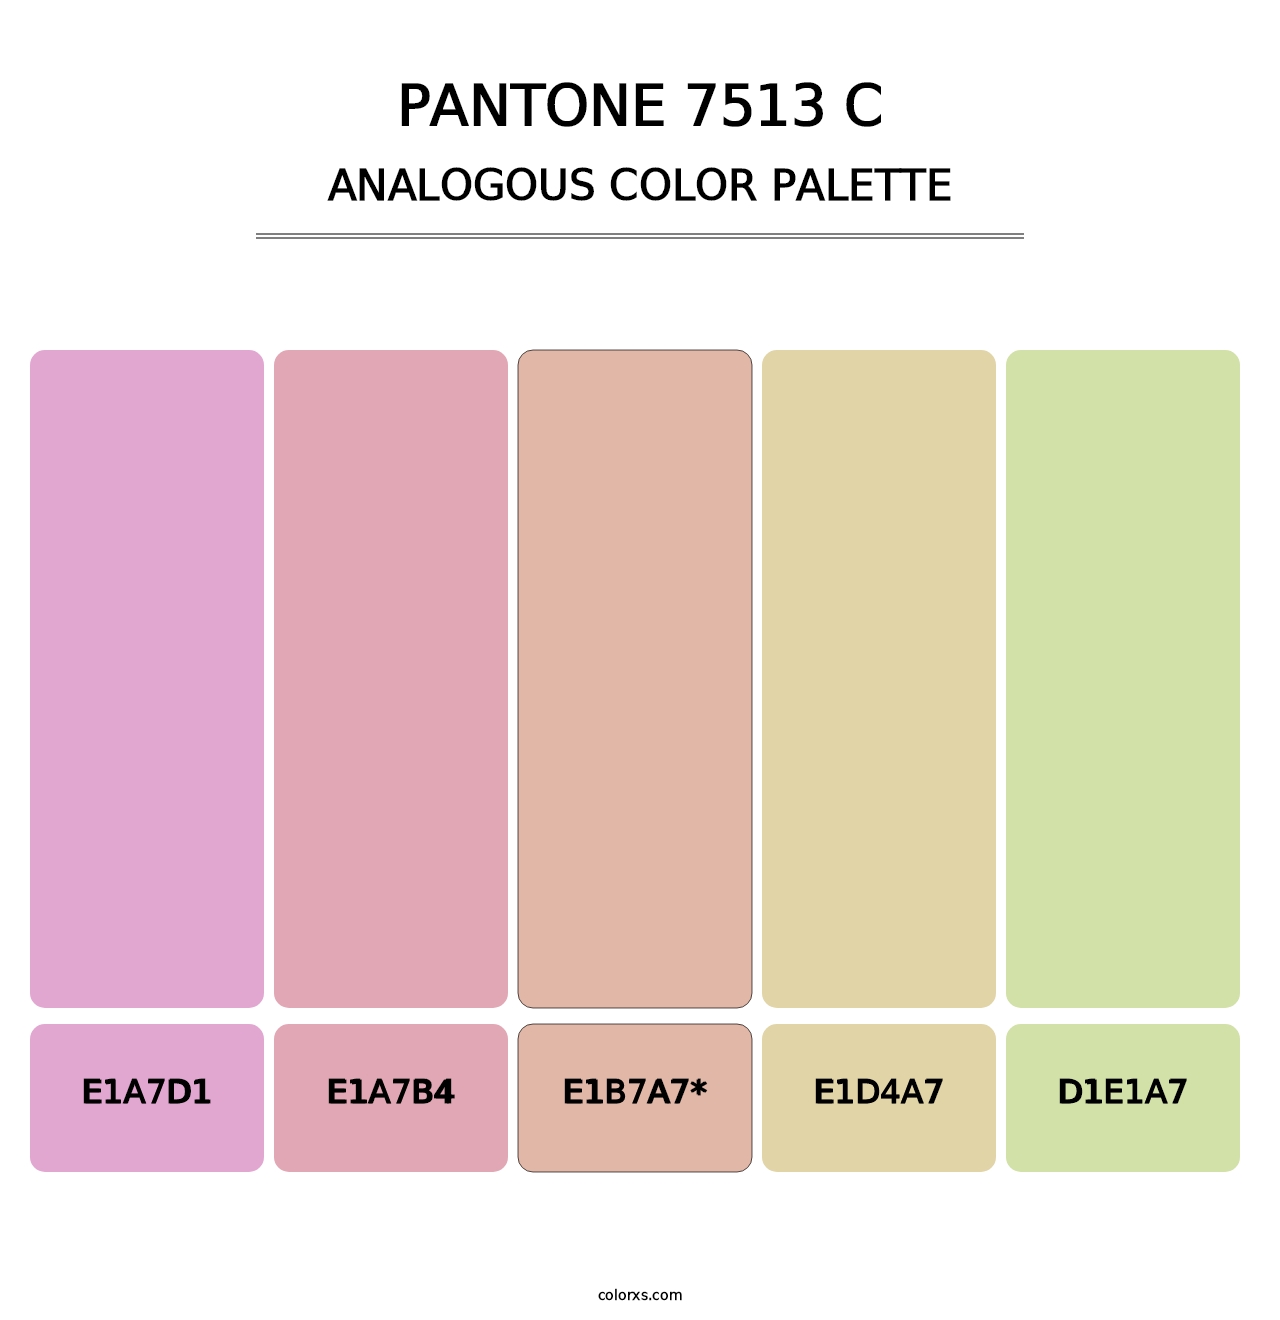 PANTONE 7513 C - Analogous Color Palette